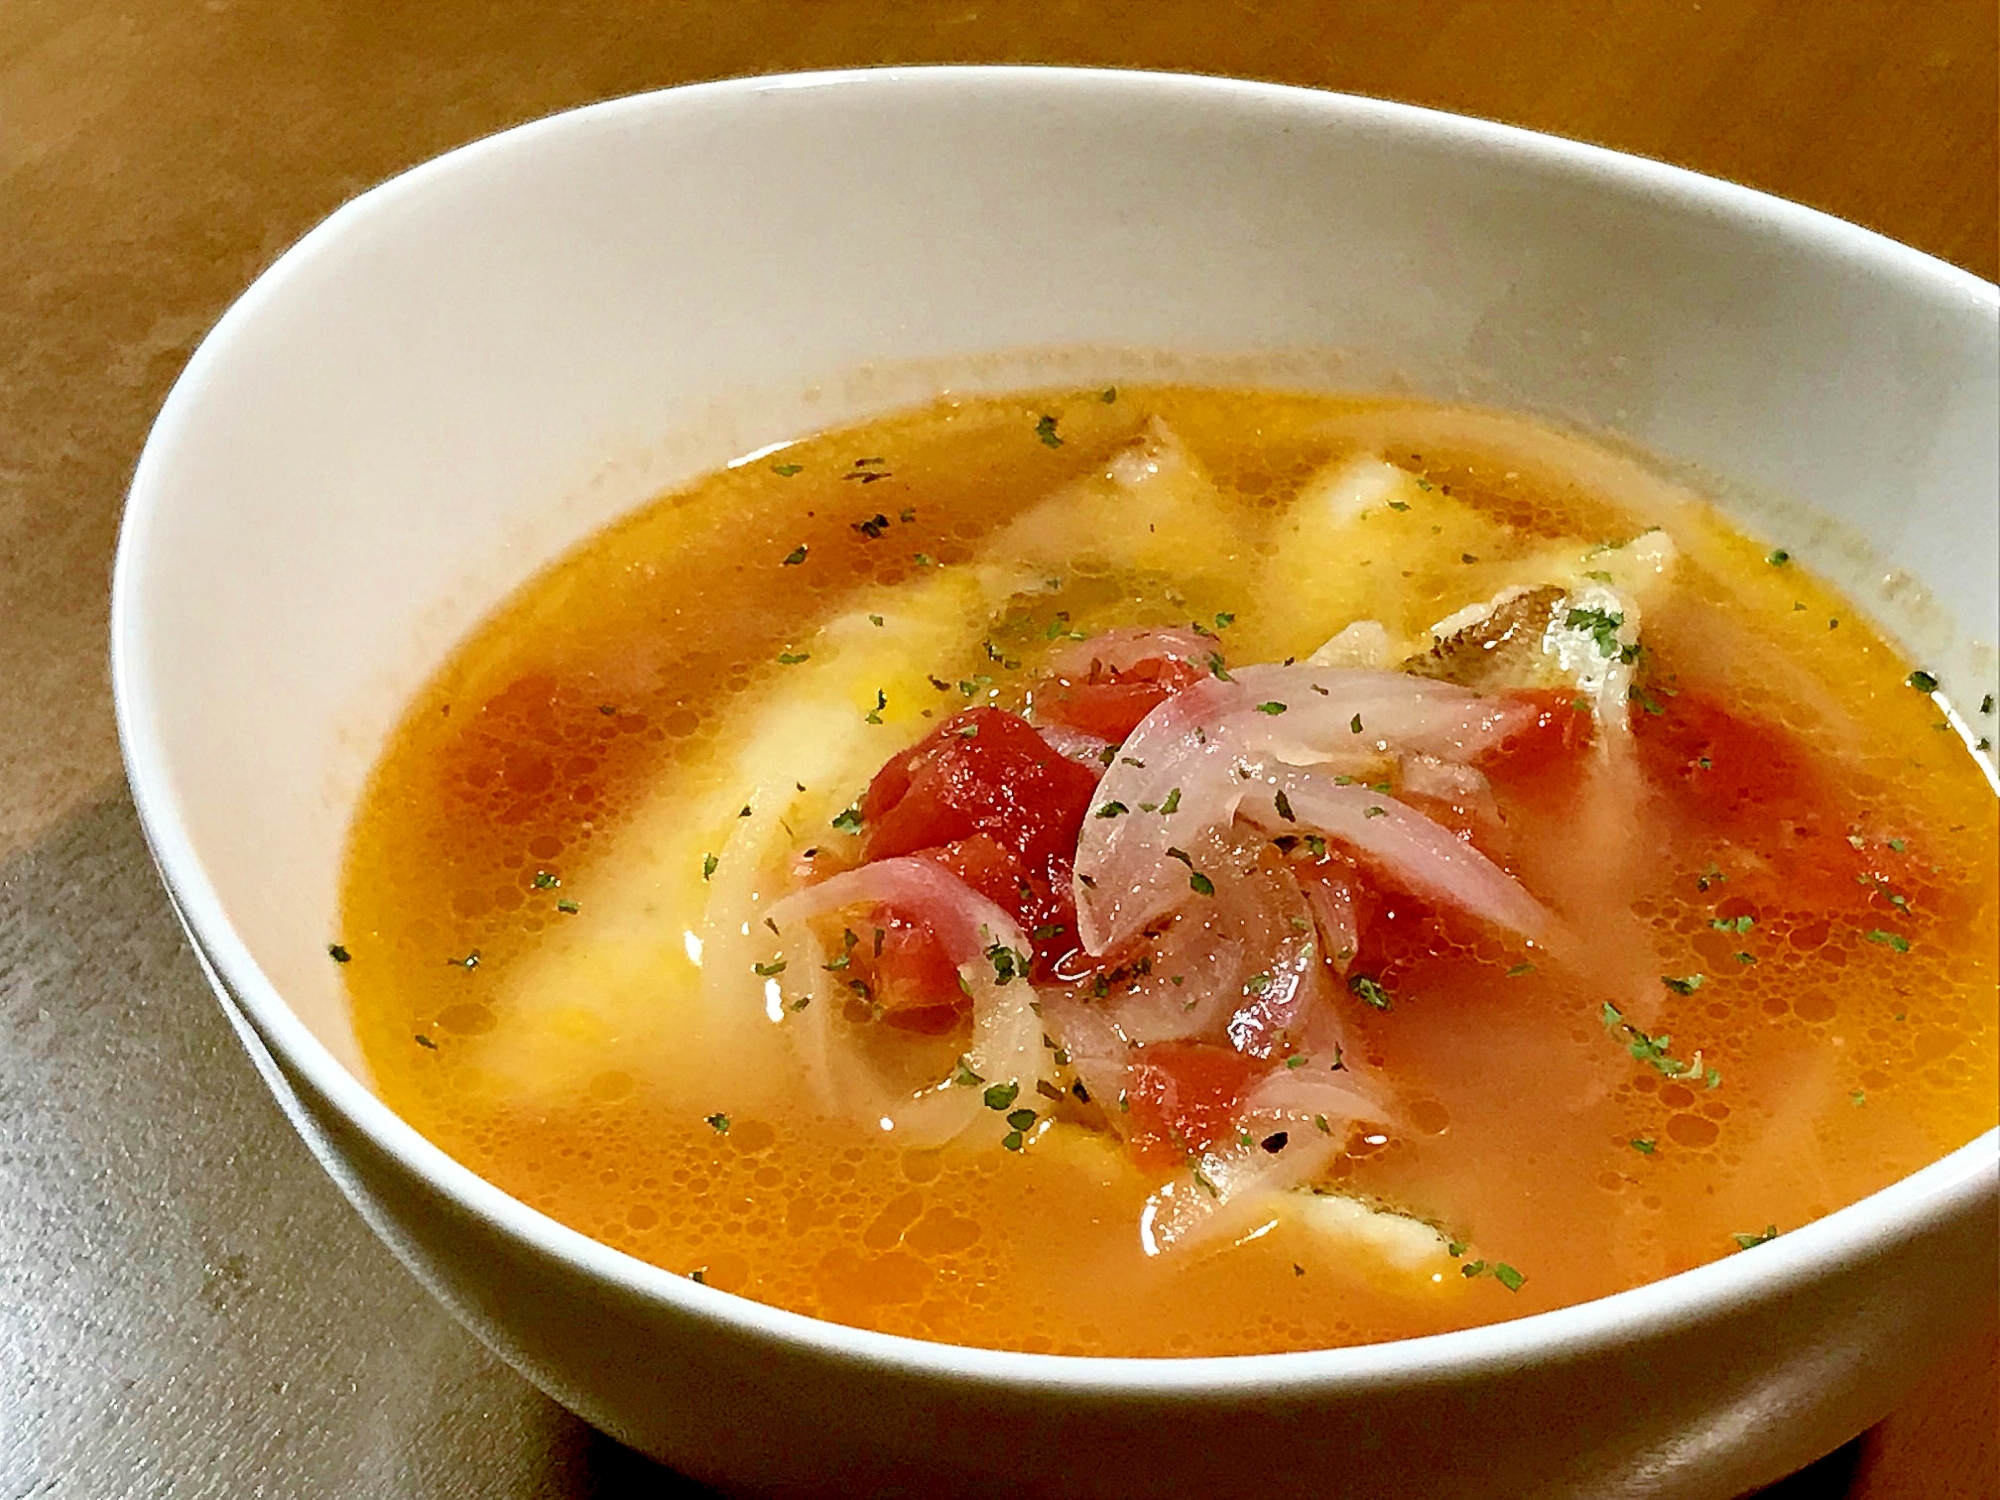 器に盛りつけられたハゼやきす、鯛の身入りのトマトスープ